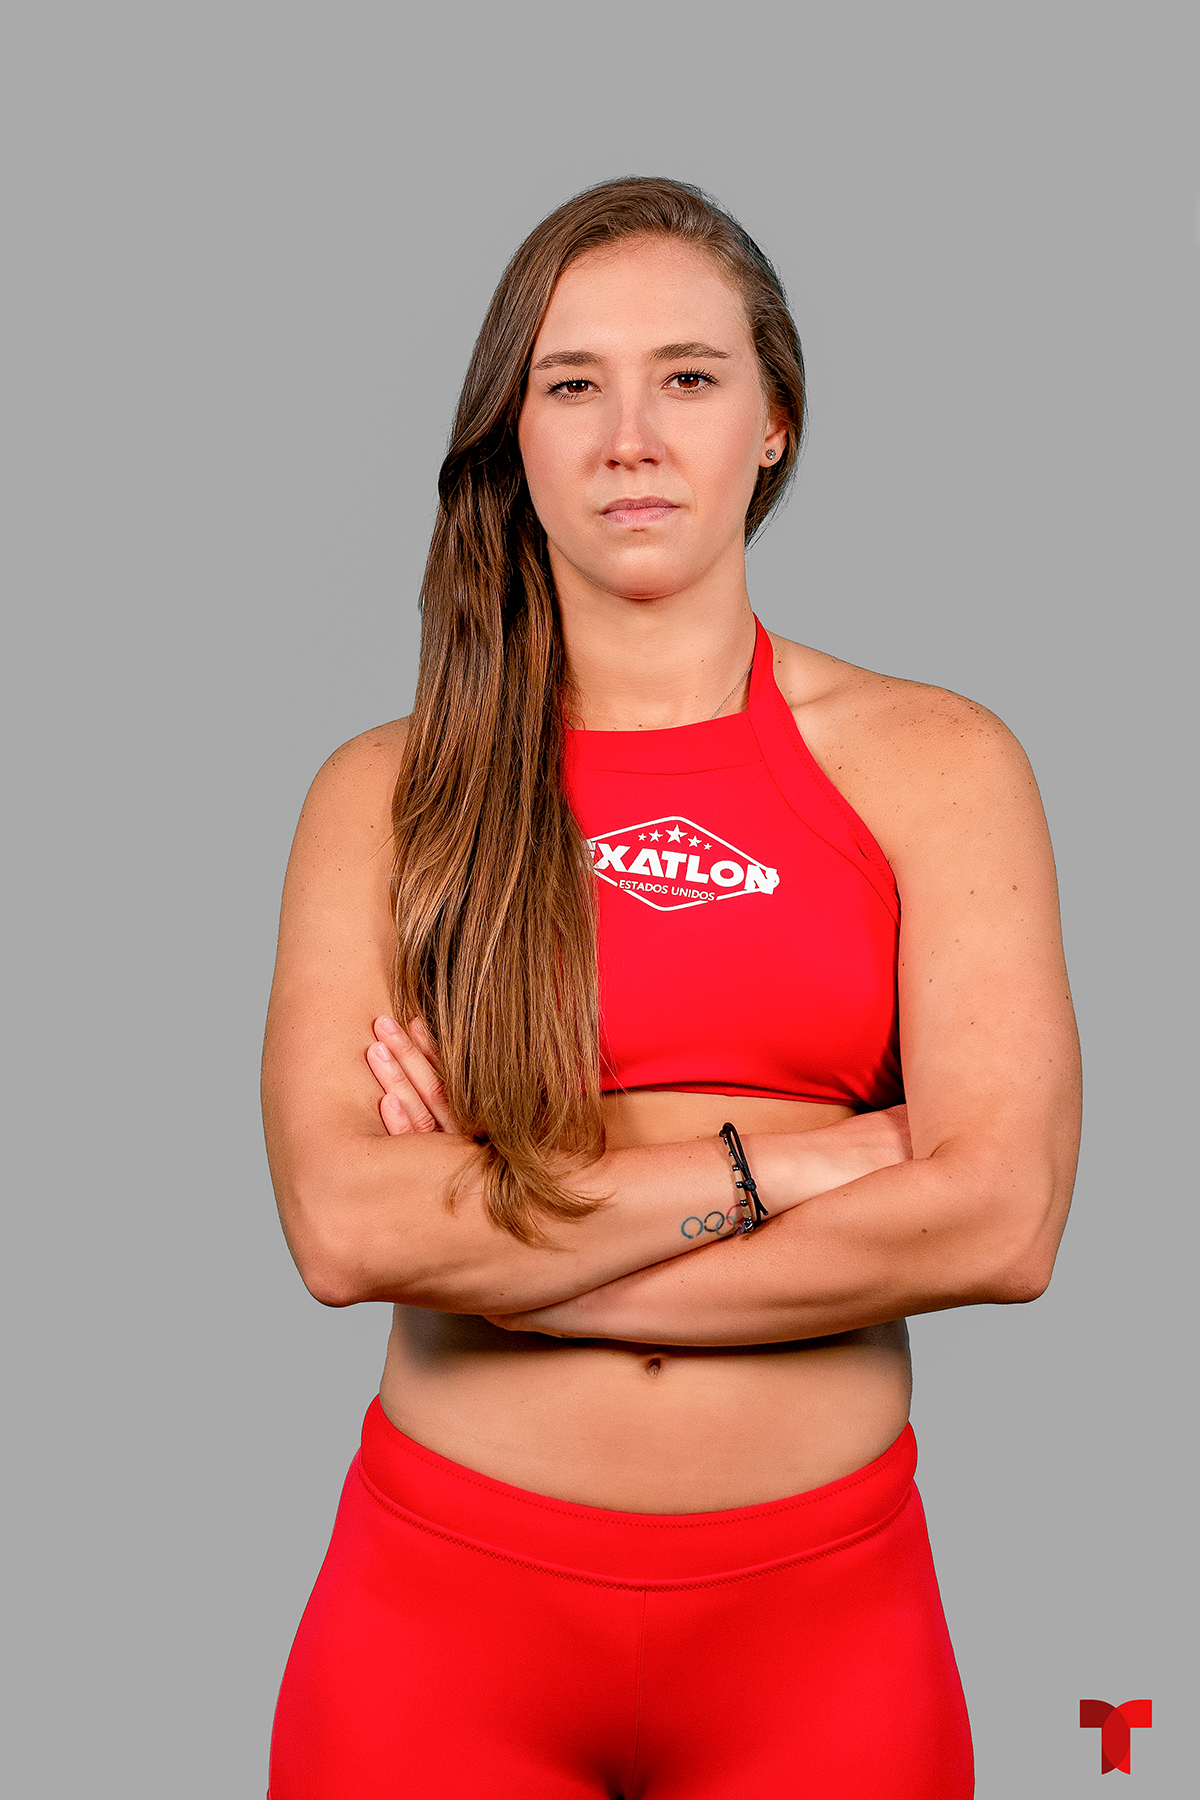 Nicole Regnier, equipo rojo de Exatlón